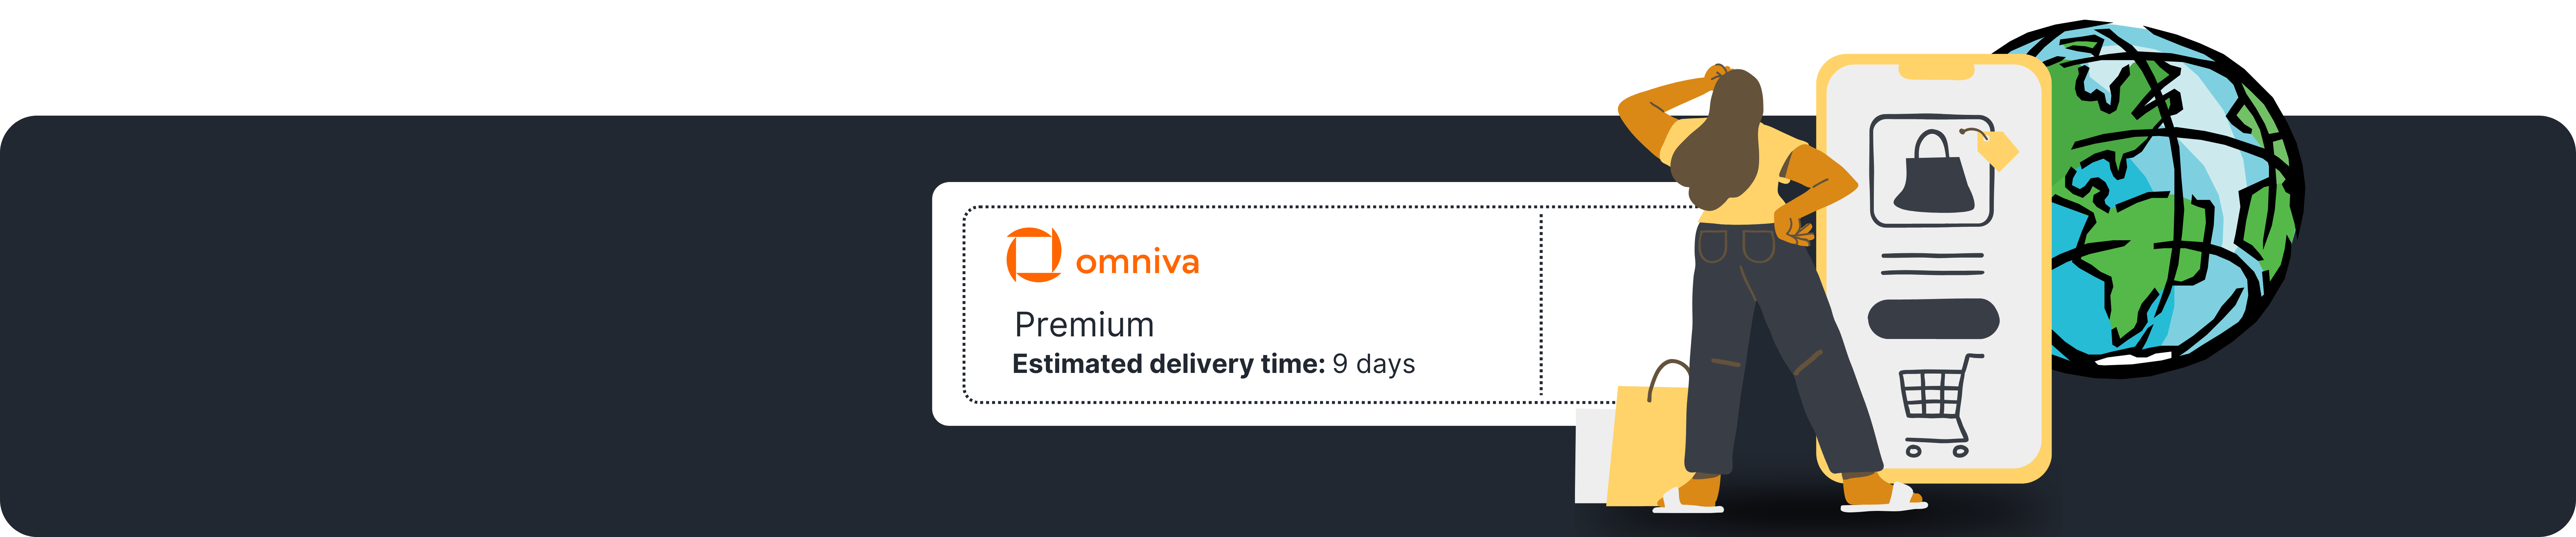 Omniva Premium internacionālie sūtījumi